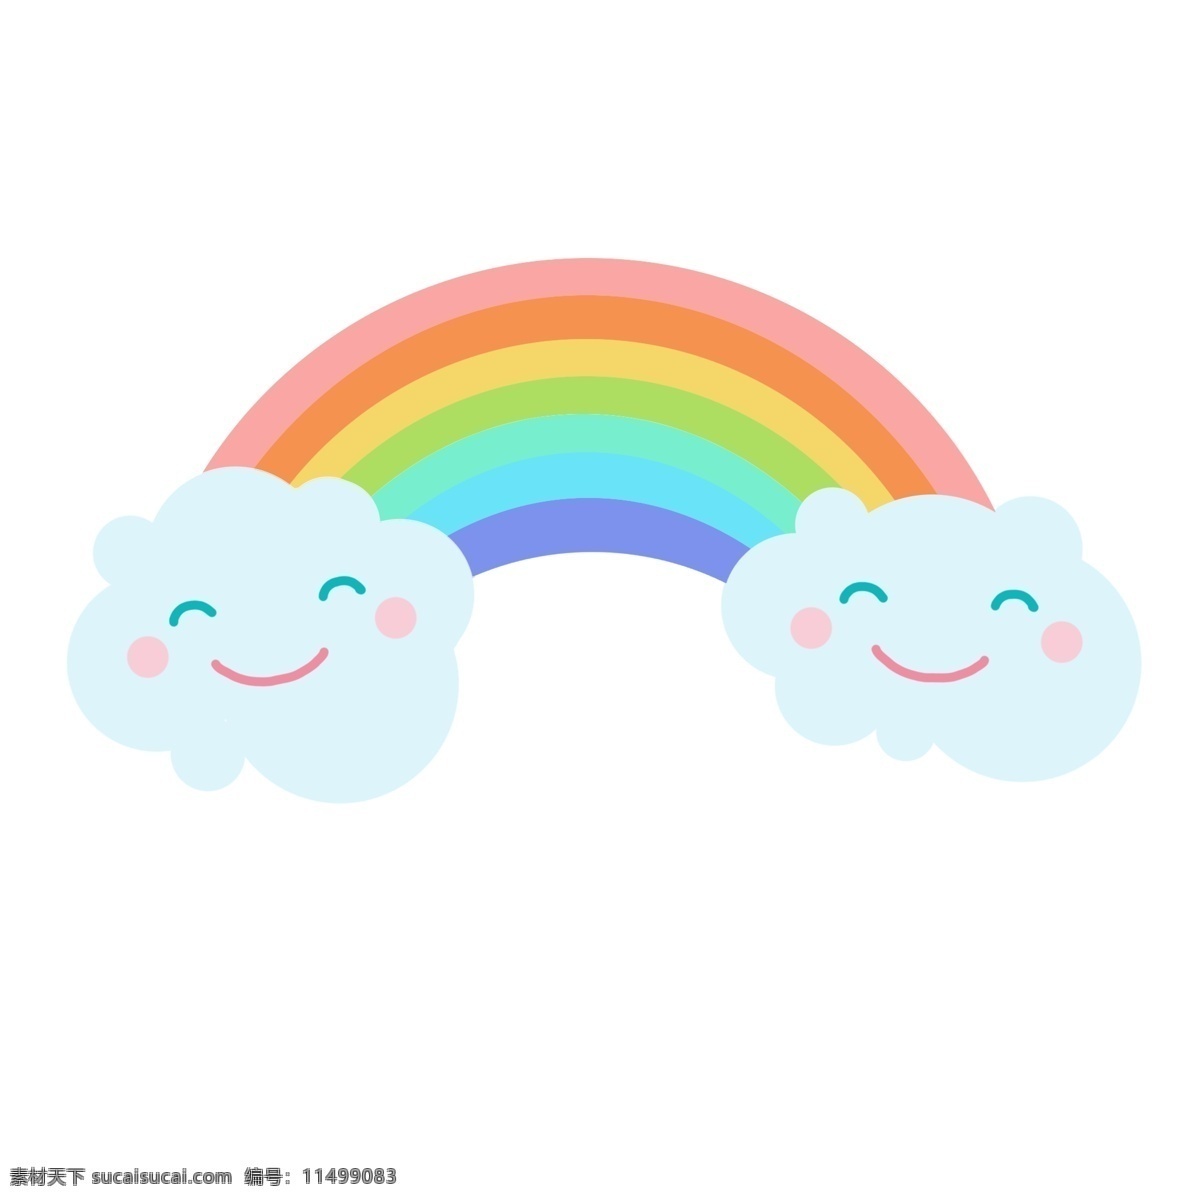 手绘 云朵 彩虹 装饰 可爱 醒目 小文艺 微笑 小清新 蓝色 粉色 笑脸 白色 卡通